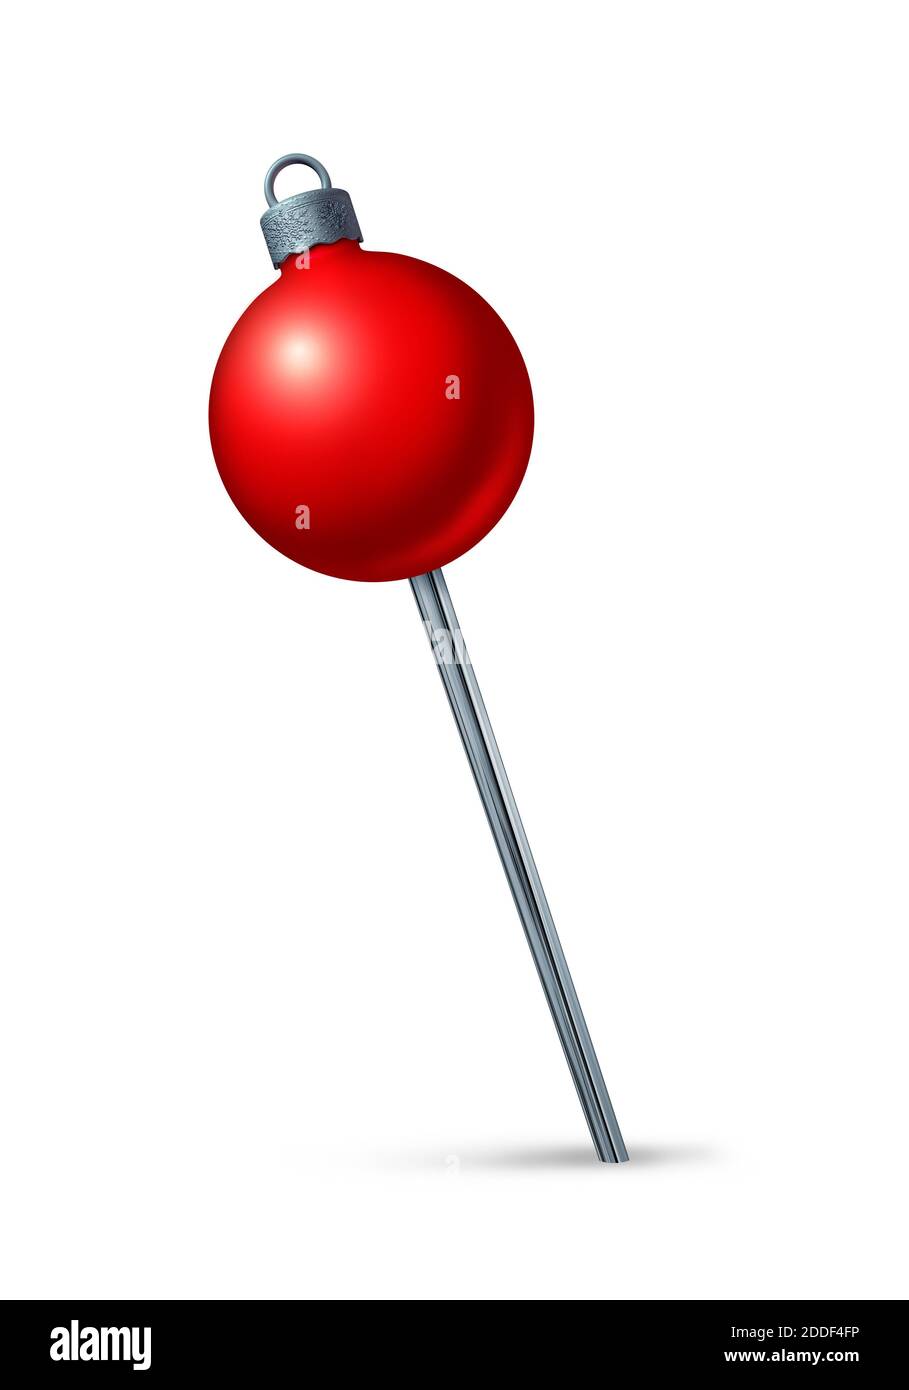 Il pulsante rosso di Natale è un simbolo di navigazione per le festività del viaggio invernale e del luogo festivo delle feste natalizie o della posizione per le feste stagionali come rendering 3D. Foto Stock